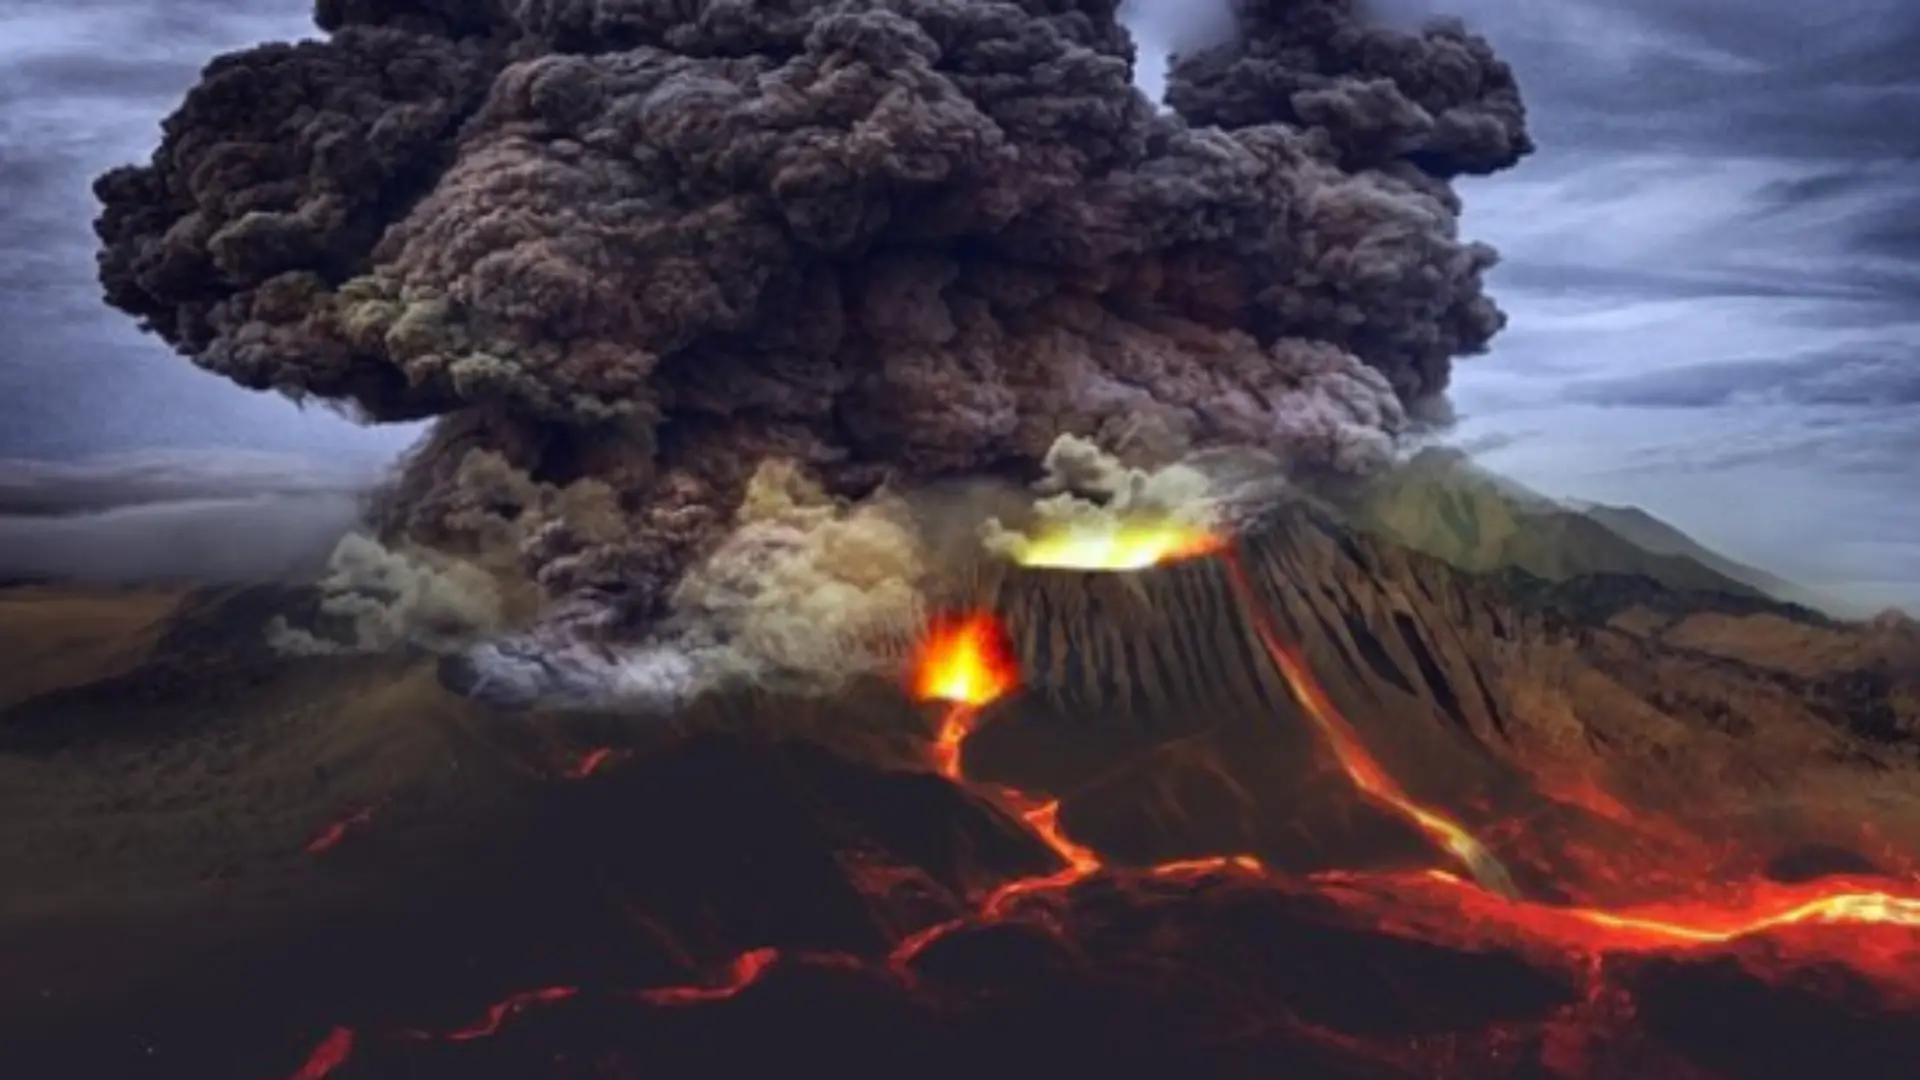 Jelaskan pengaruh dampak positif dari gunung berapi